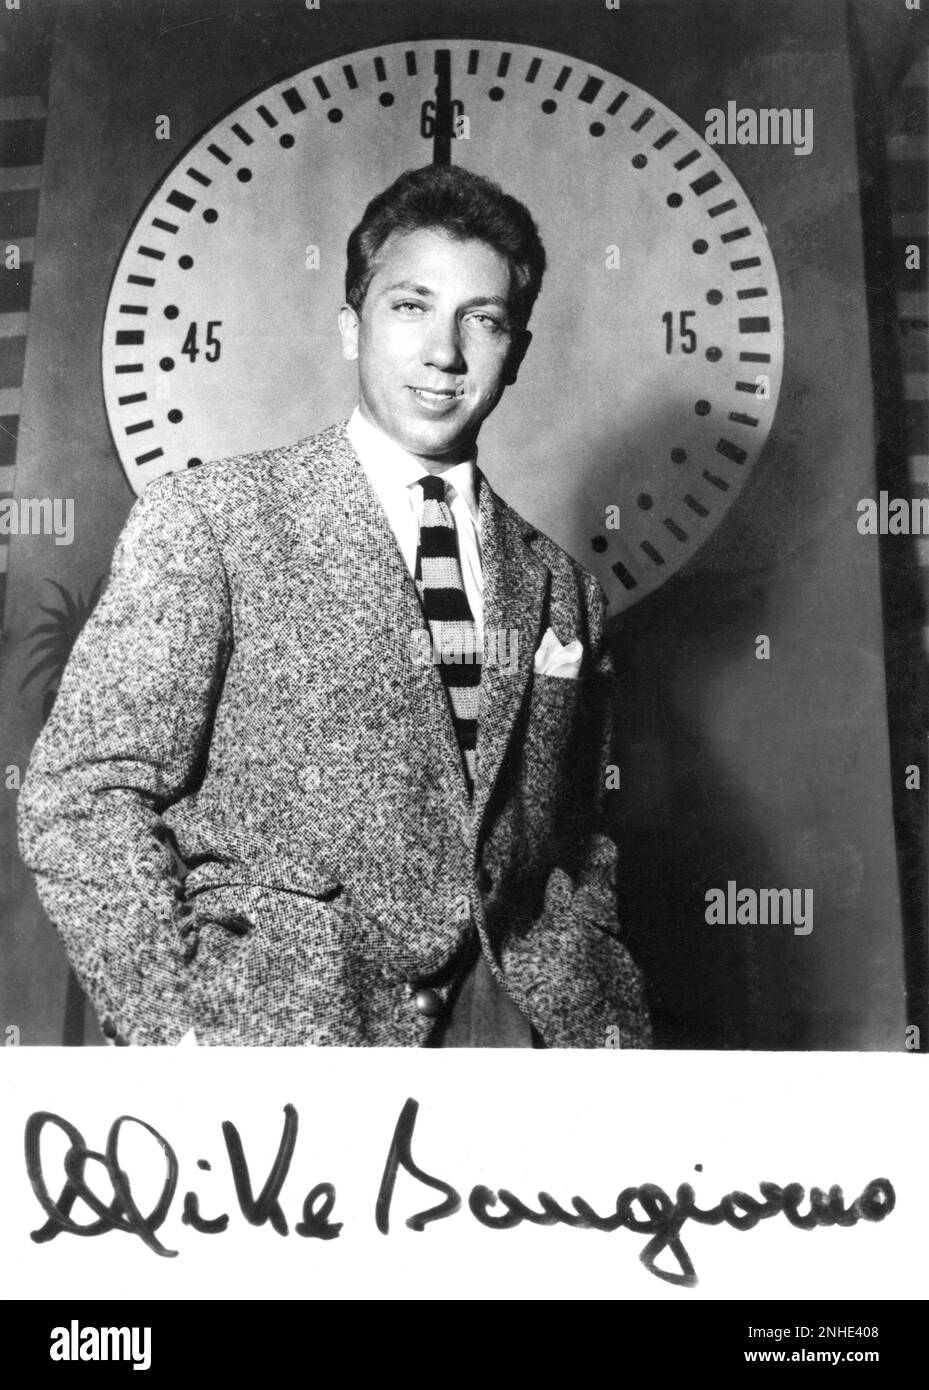 1956. : EL MAESTRO DE LA TELEVISIÓN italiana Y EL REY DE TELE QUEZ-MAN MIKE  BONGIORNO ( Nacido EN NUEVA YORK 1924 ) Cuando era un joven compére  interrogador en la radio